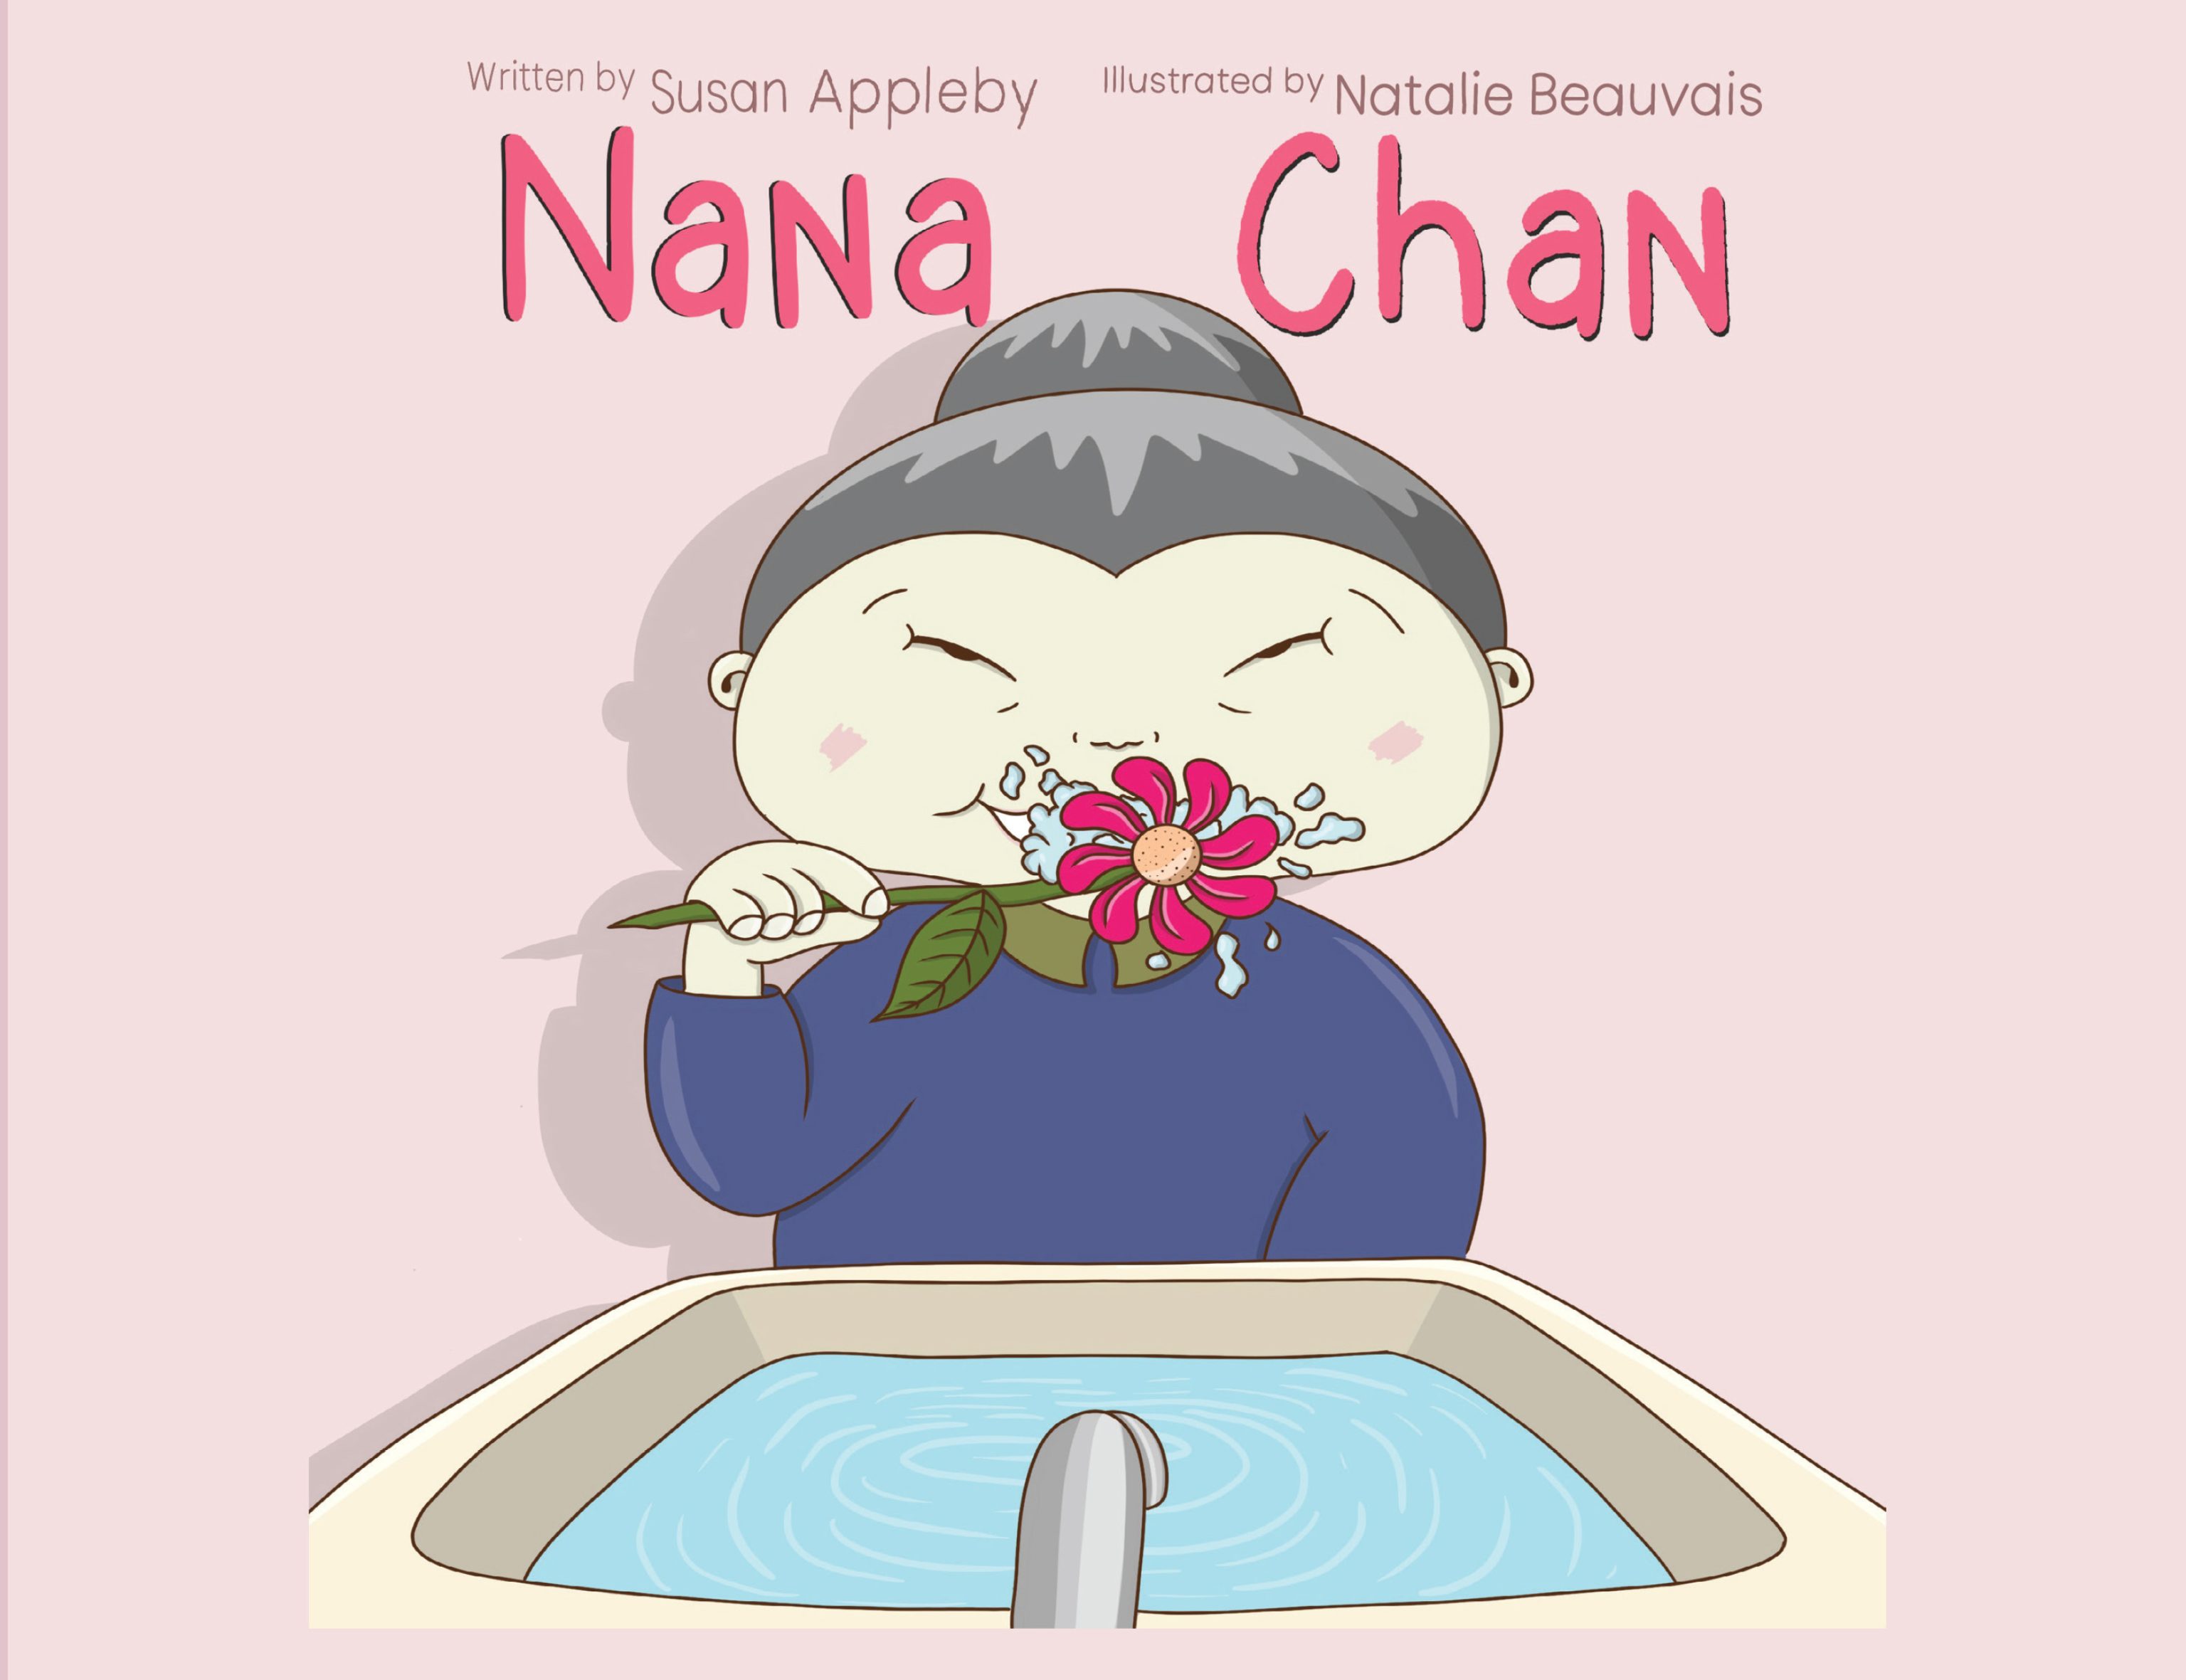 Nana Chan